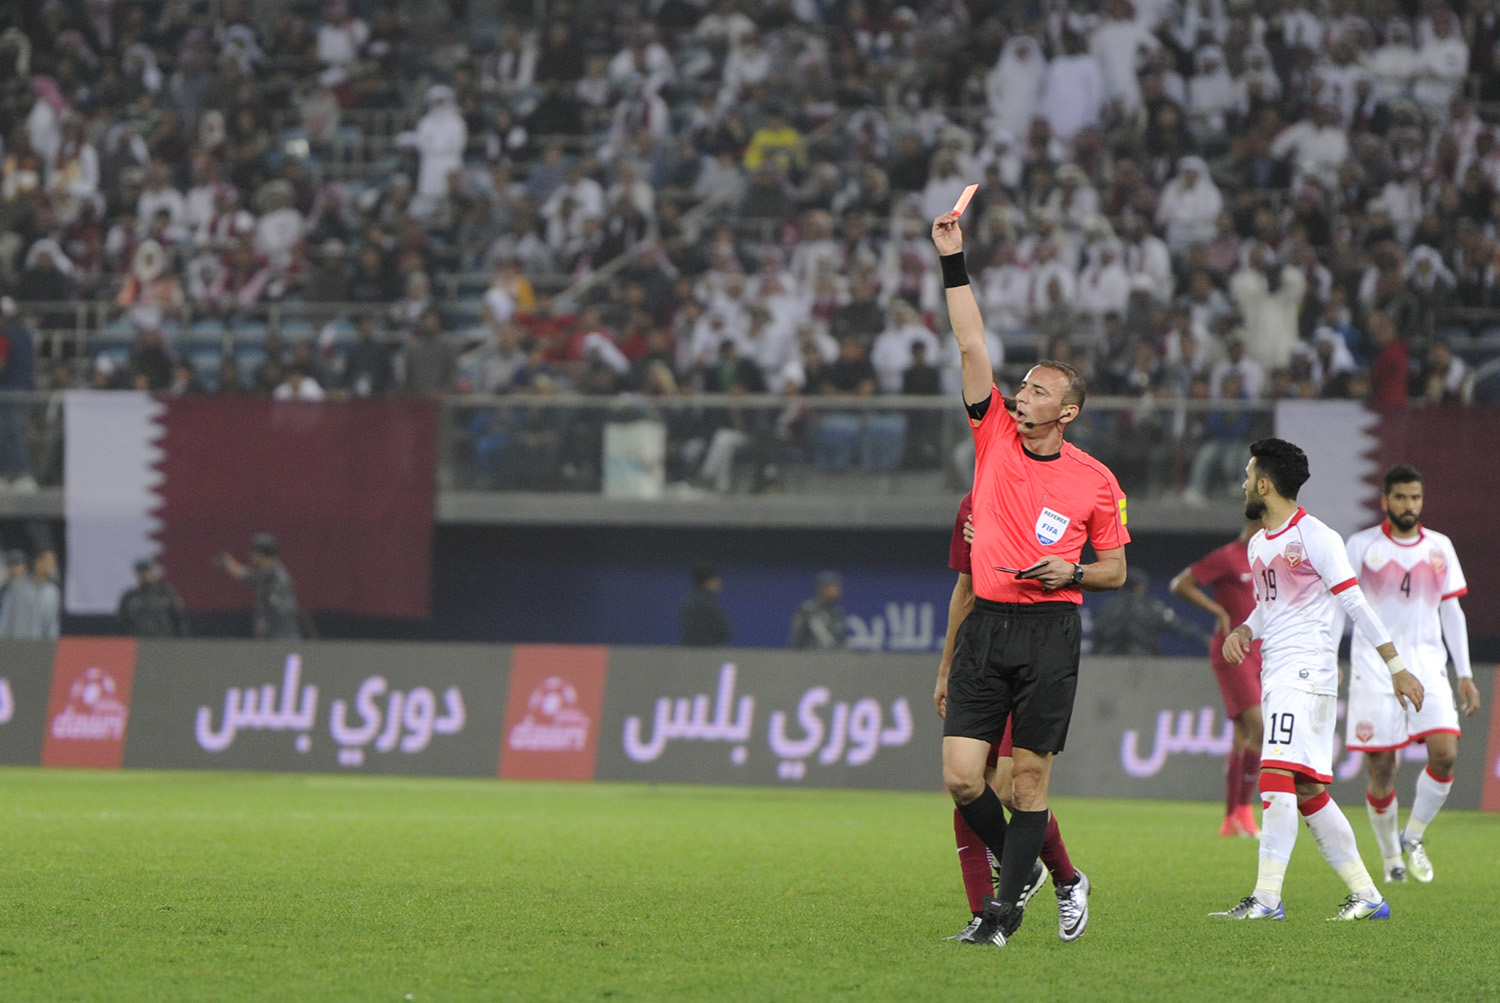 حكم المباراة يخرج البطاقة الحمراء للاعب المنتخب القطري أحمد فتحي